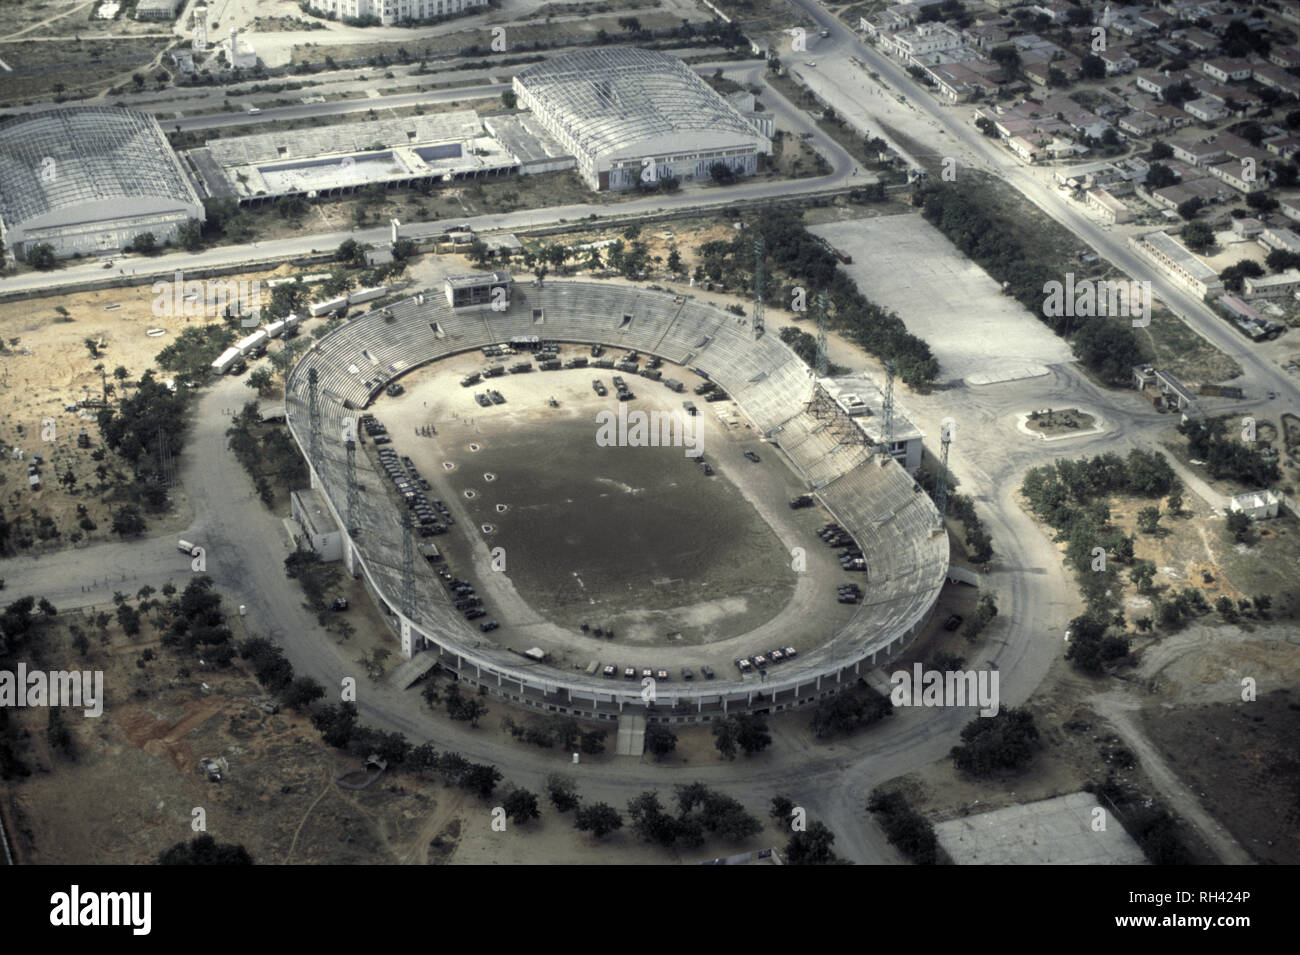 El 12 de octubre de 1993 Estadio de Mogadishu, Somalia, visto desde el norte, donde las fuerzas de las Naciones Unidas pakistaní se basan. Foto de stock